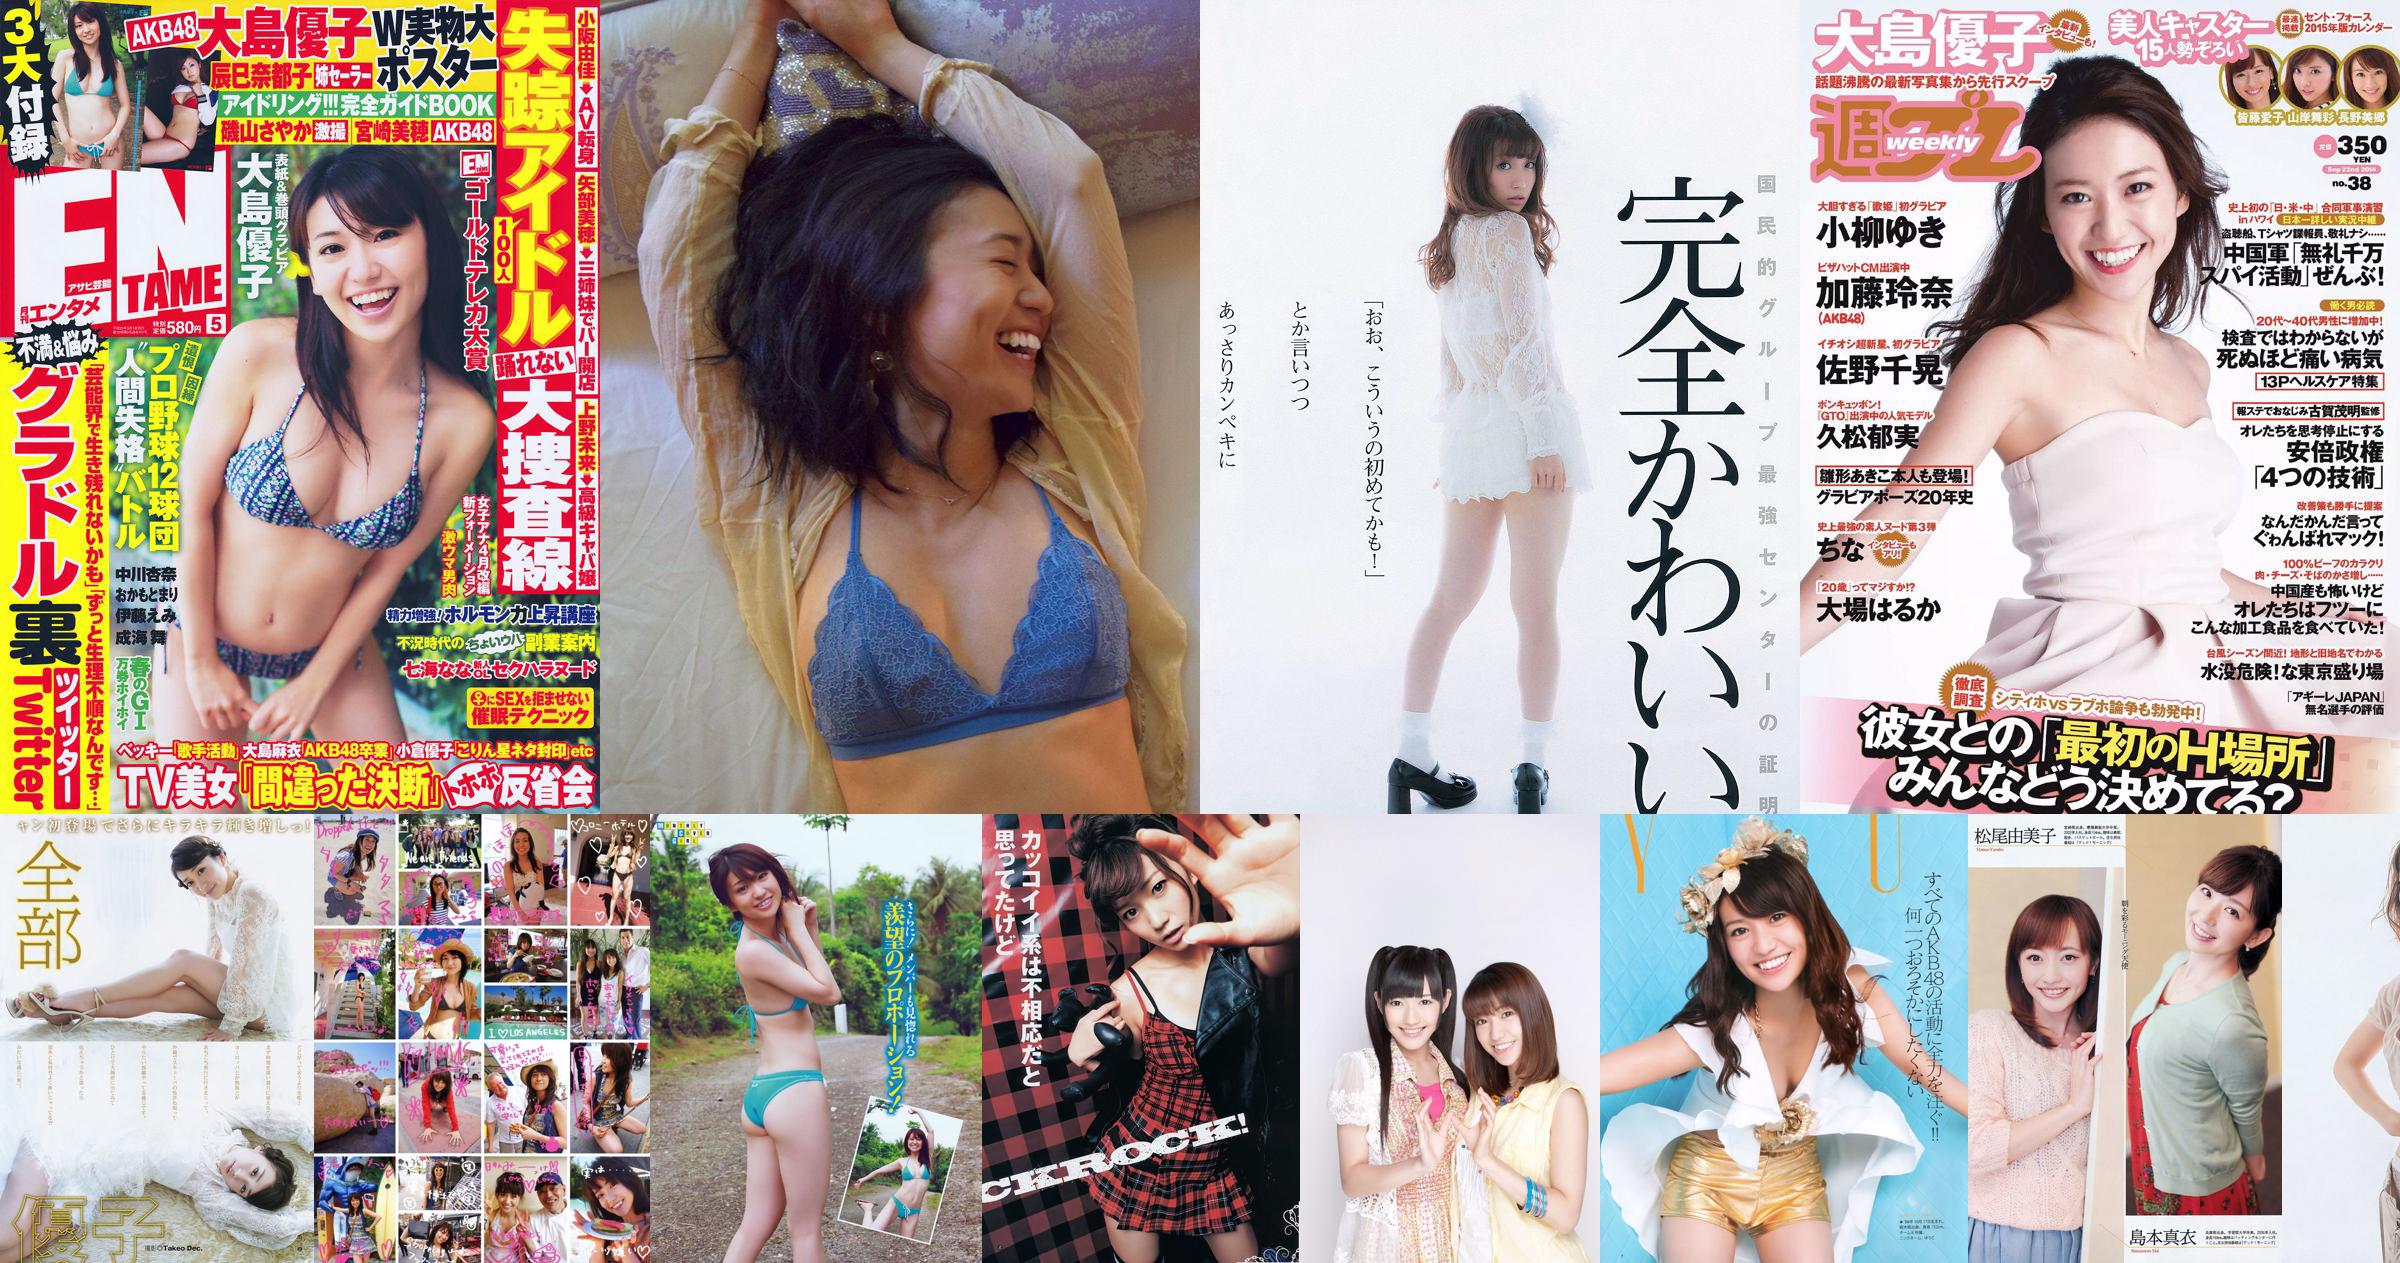 Oshima Yuko / Watanabe Mayu "Vacaciones de verano para Mayu Watanabe" [YS Web] Vol.435 No.e07204 Página 29